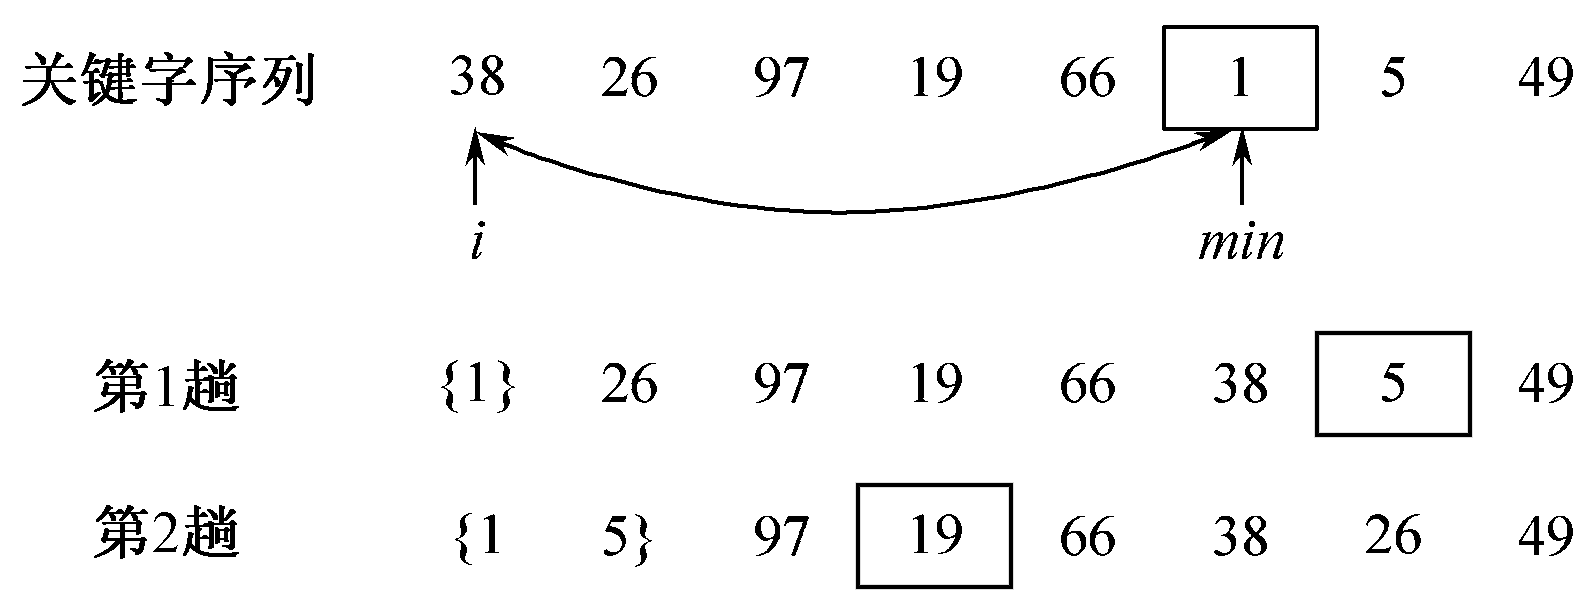 数据结构讲义 - 图54